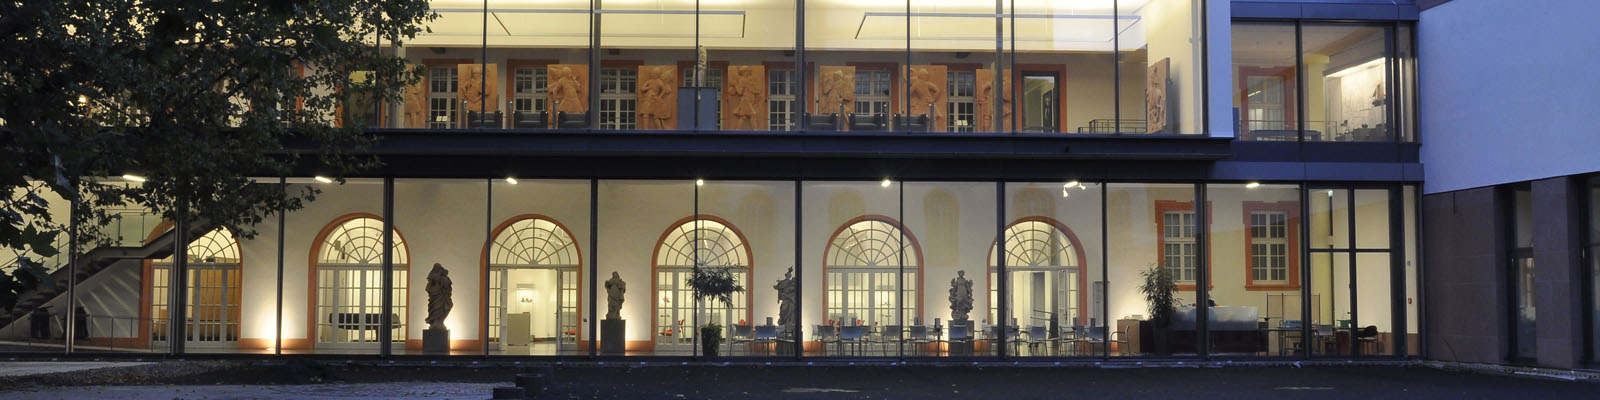 Landesmuseum Mainz, Arkadenansicht vom Innenhof